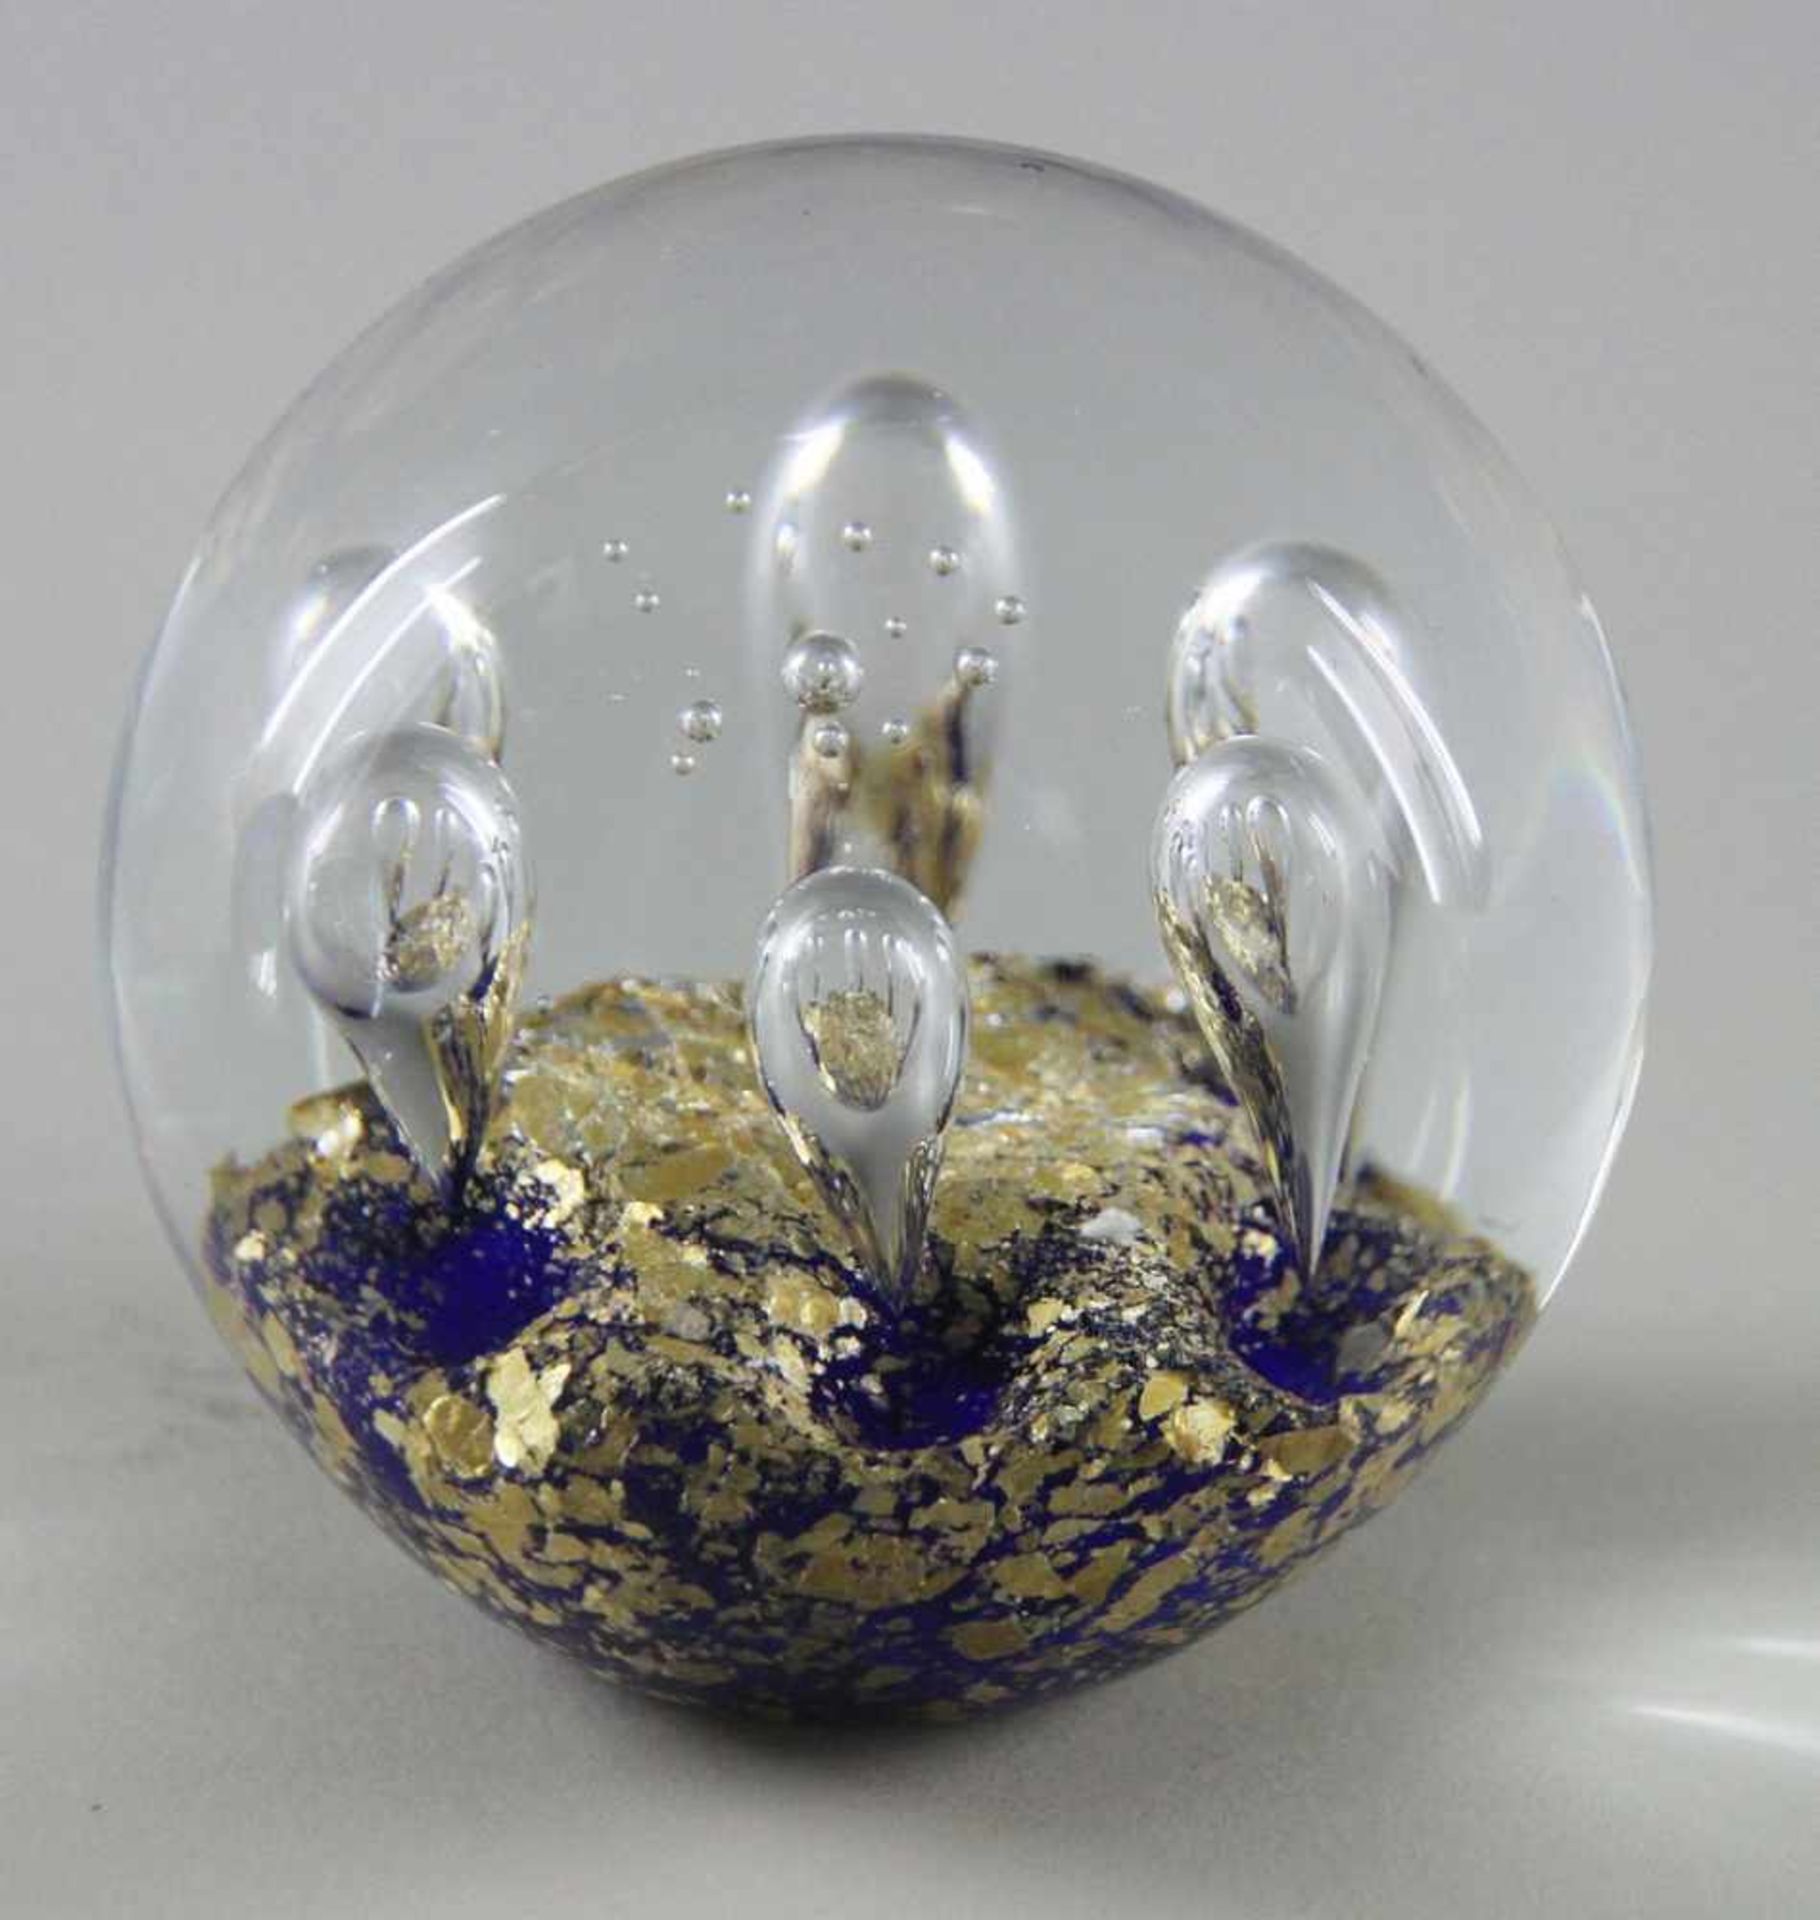 Paperweight, Glas, 20. Jhd., Farbloses Glas, blauer Grund mit Goldkröseln, radial 6 aufsteigende